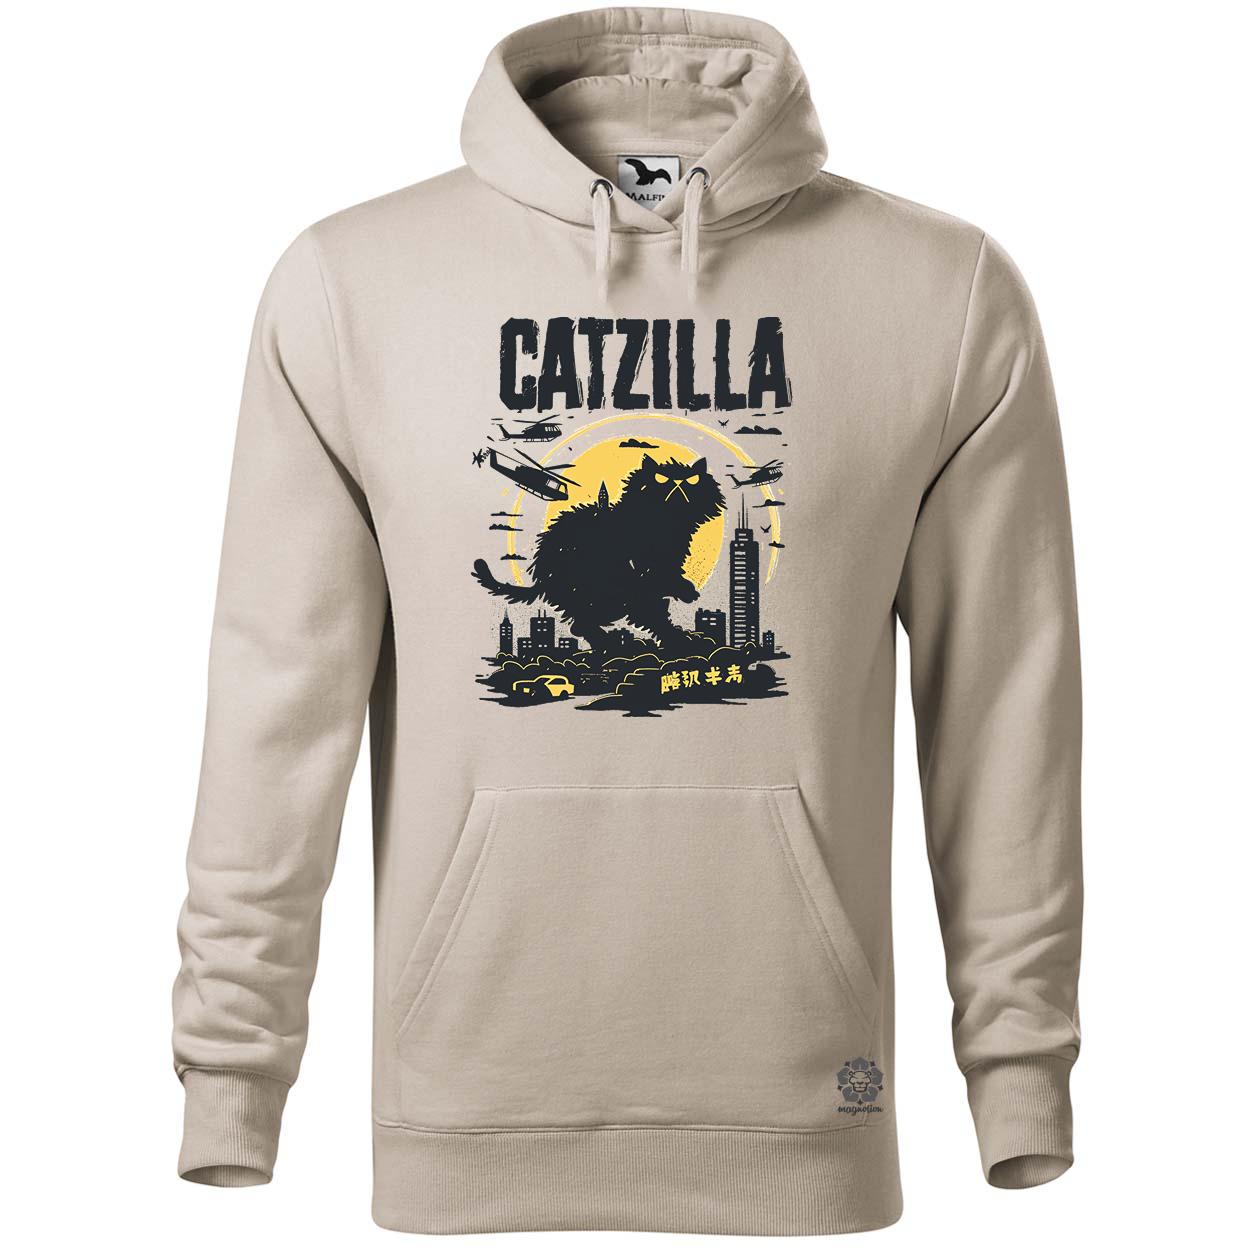 Catzilla v3